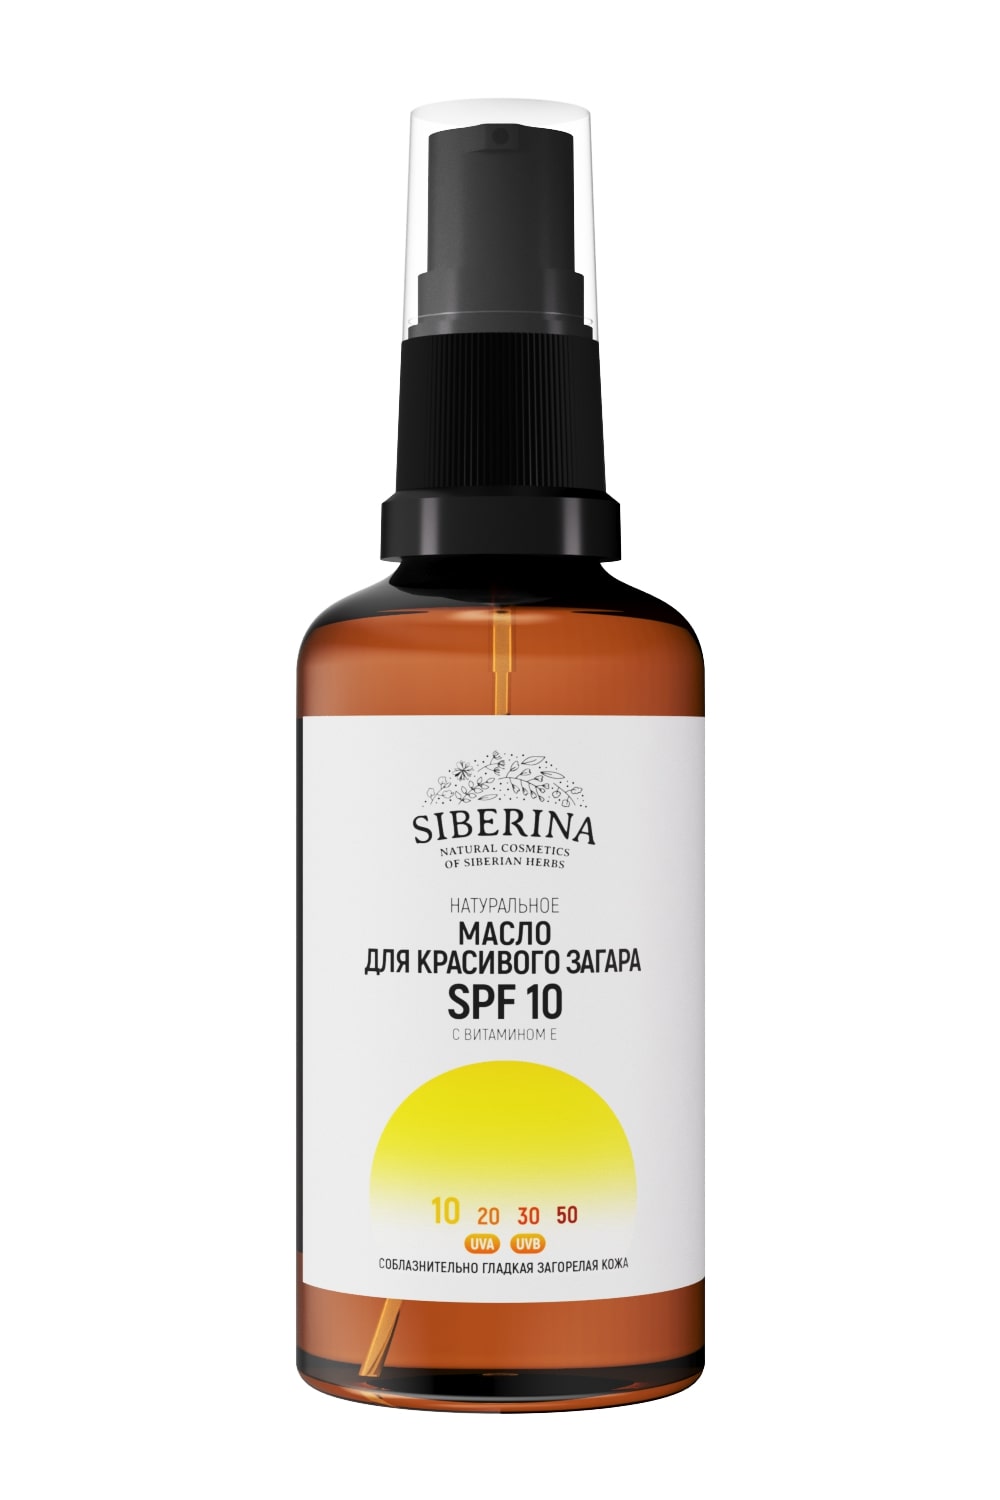 Натуральное масло Siberina для красивого загара лица и тела SPF 10, 50 мл